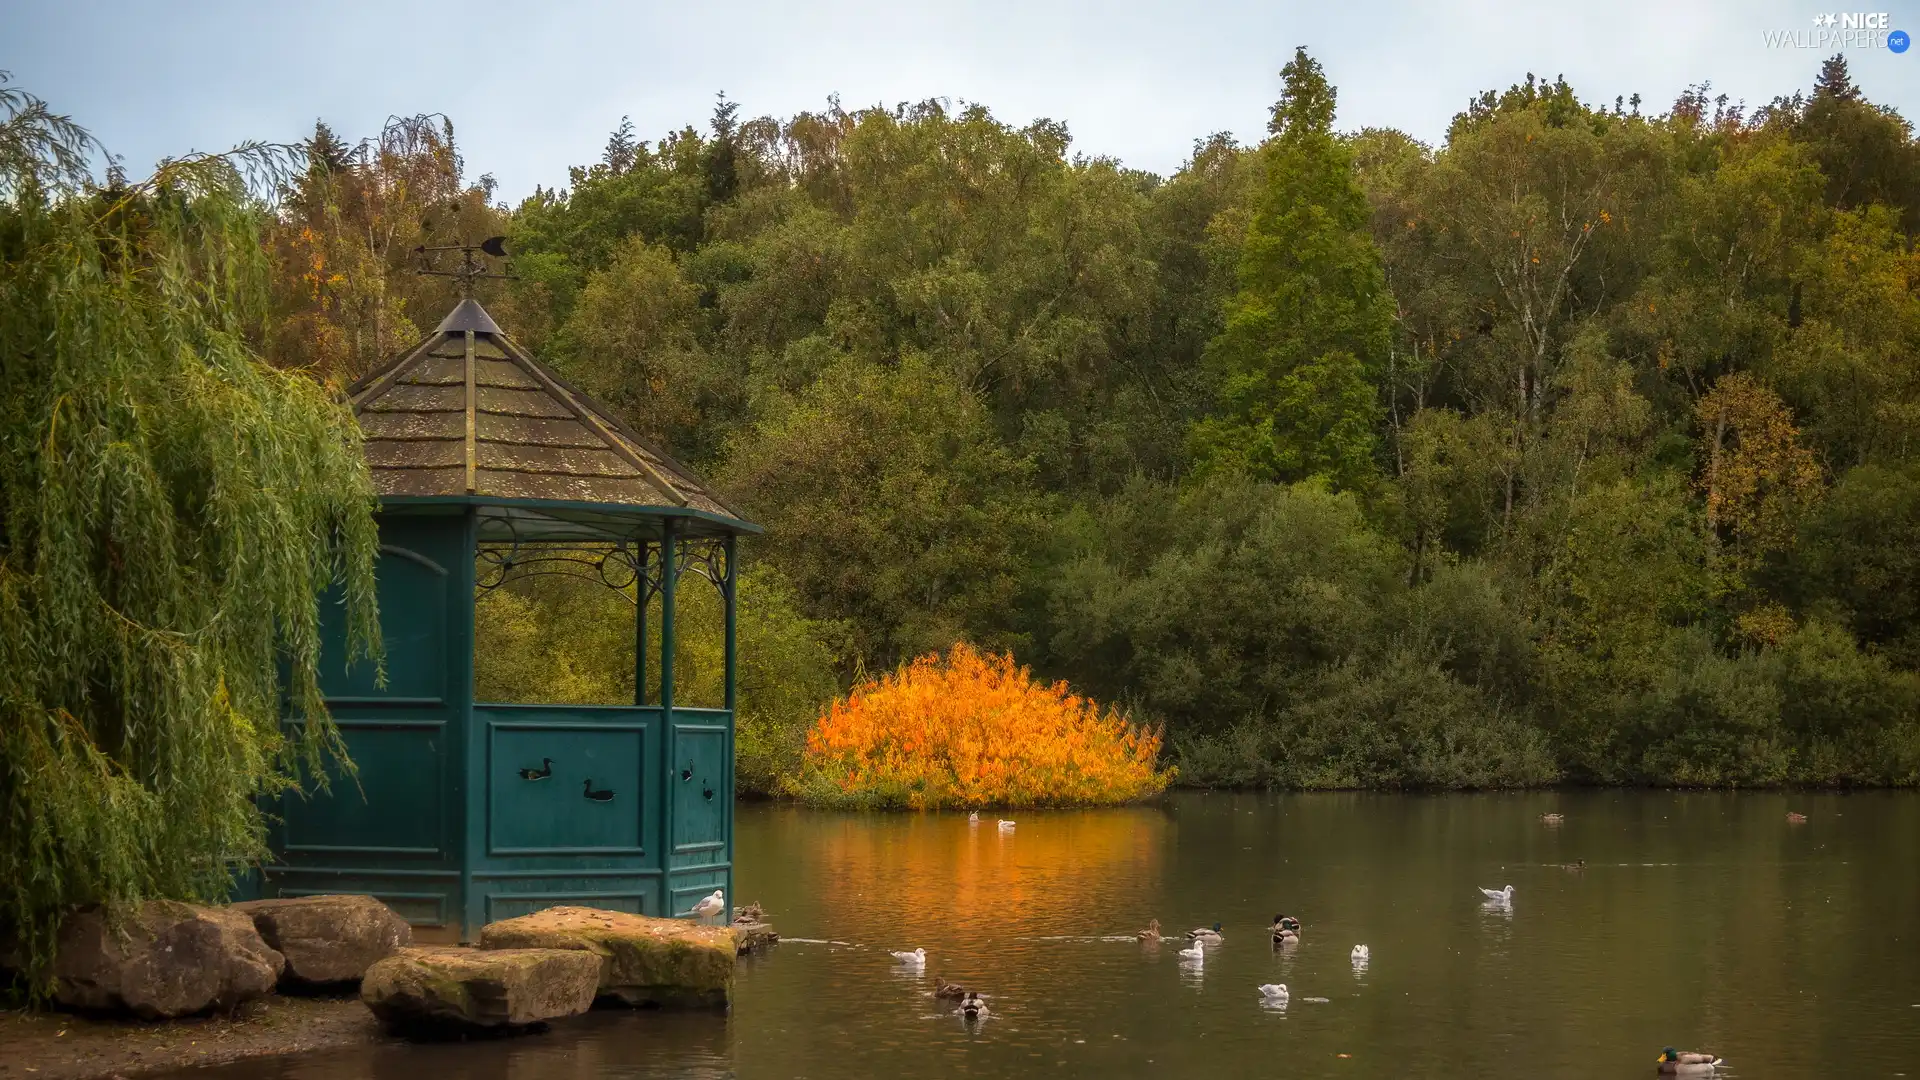 viewes, Pond - car, Stones, trees, Park, arbour, ducks